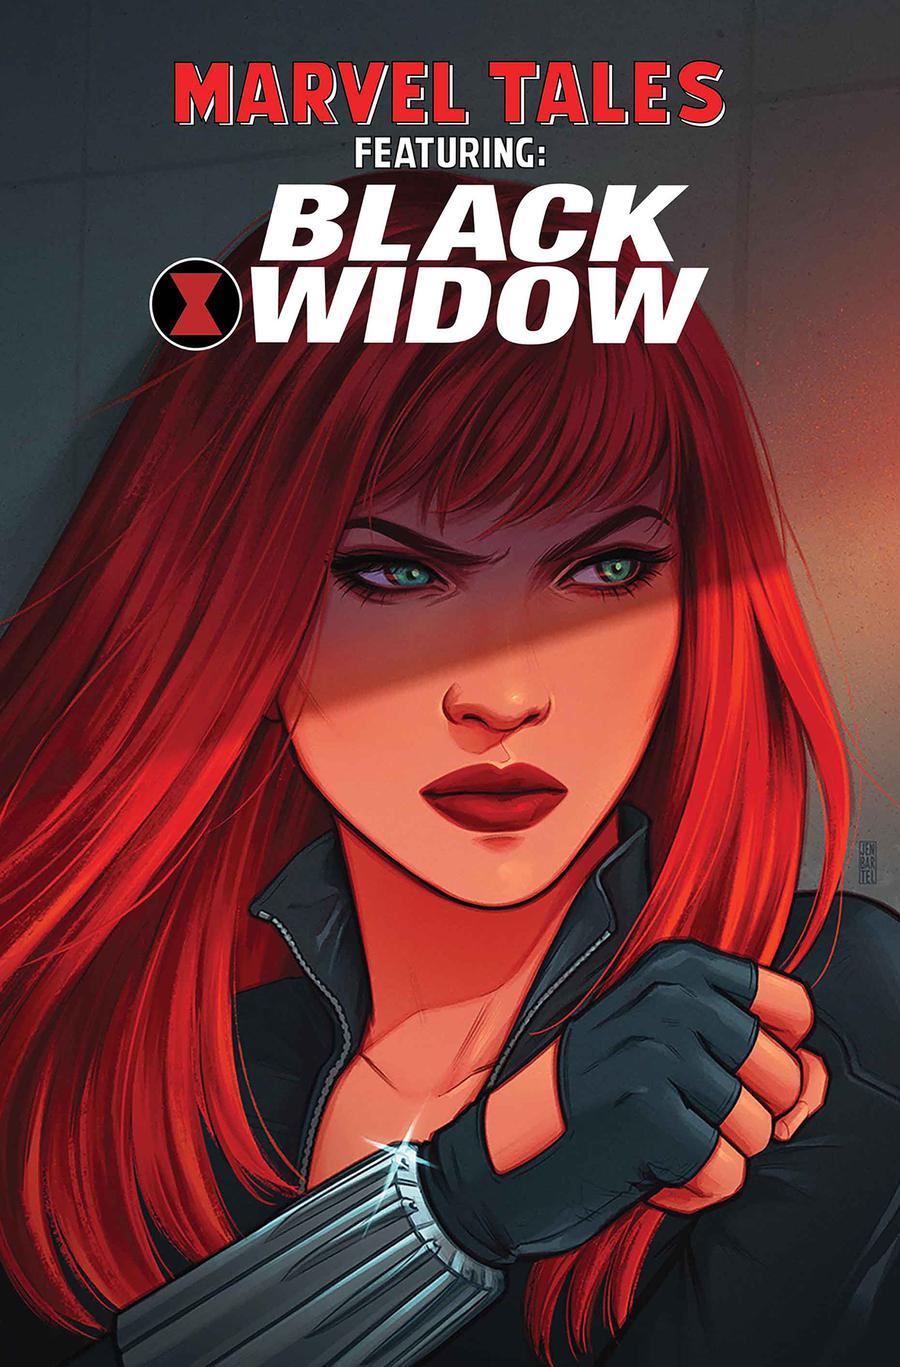 Marvel Tales Black Widow Vol. 1 #1